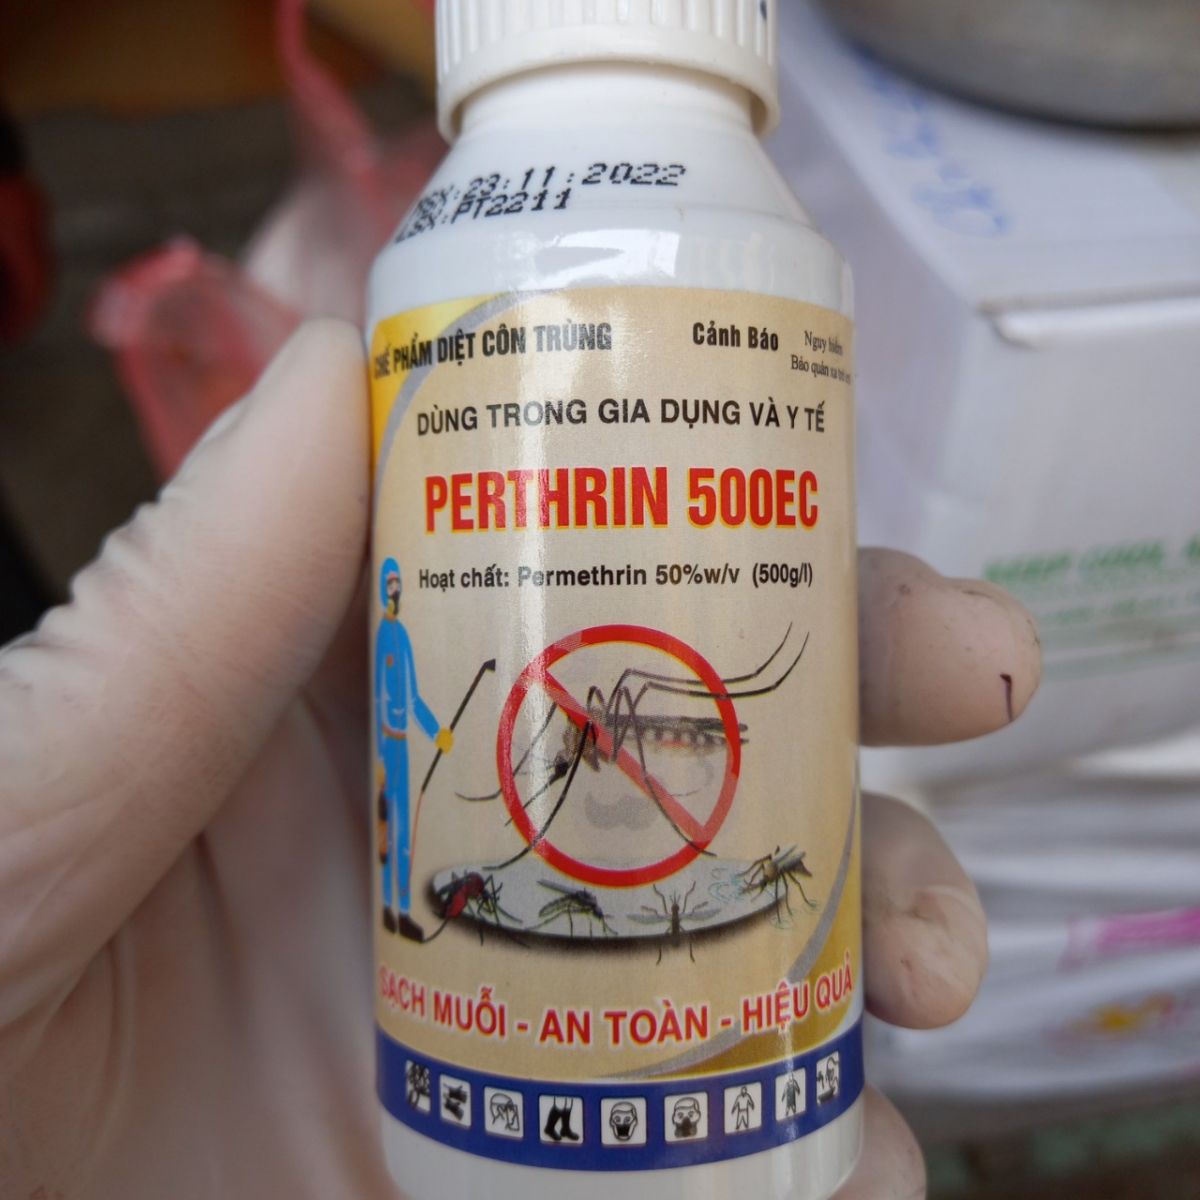 Thuốc diệt muỗi Perthrin 500EC an toàn, hiệu quả